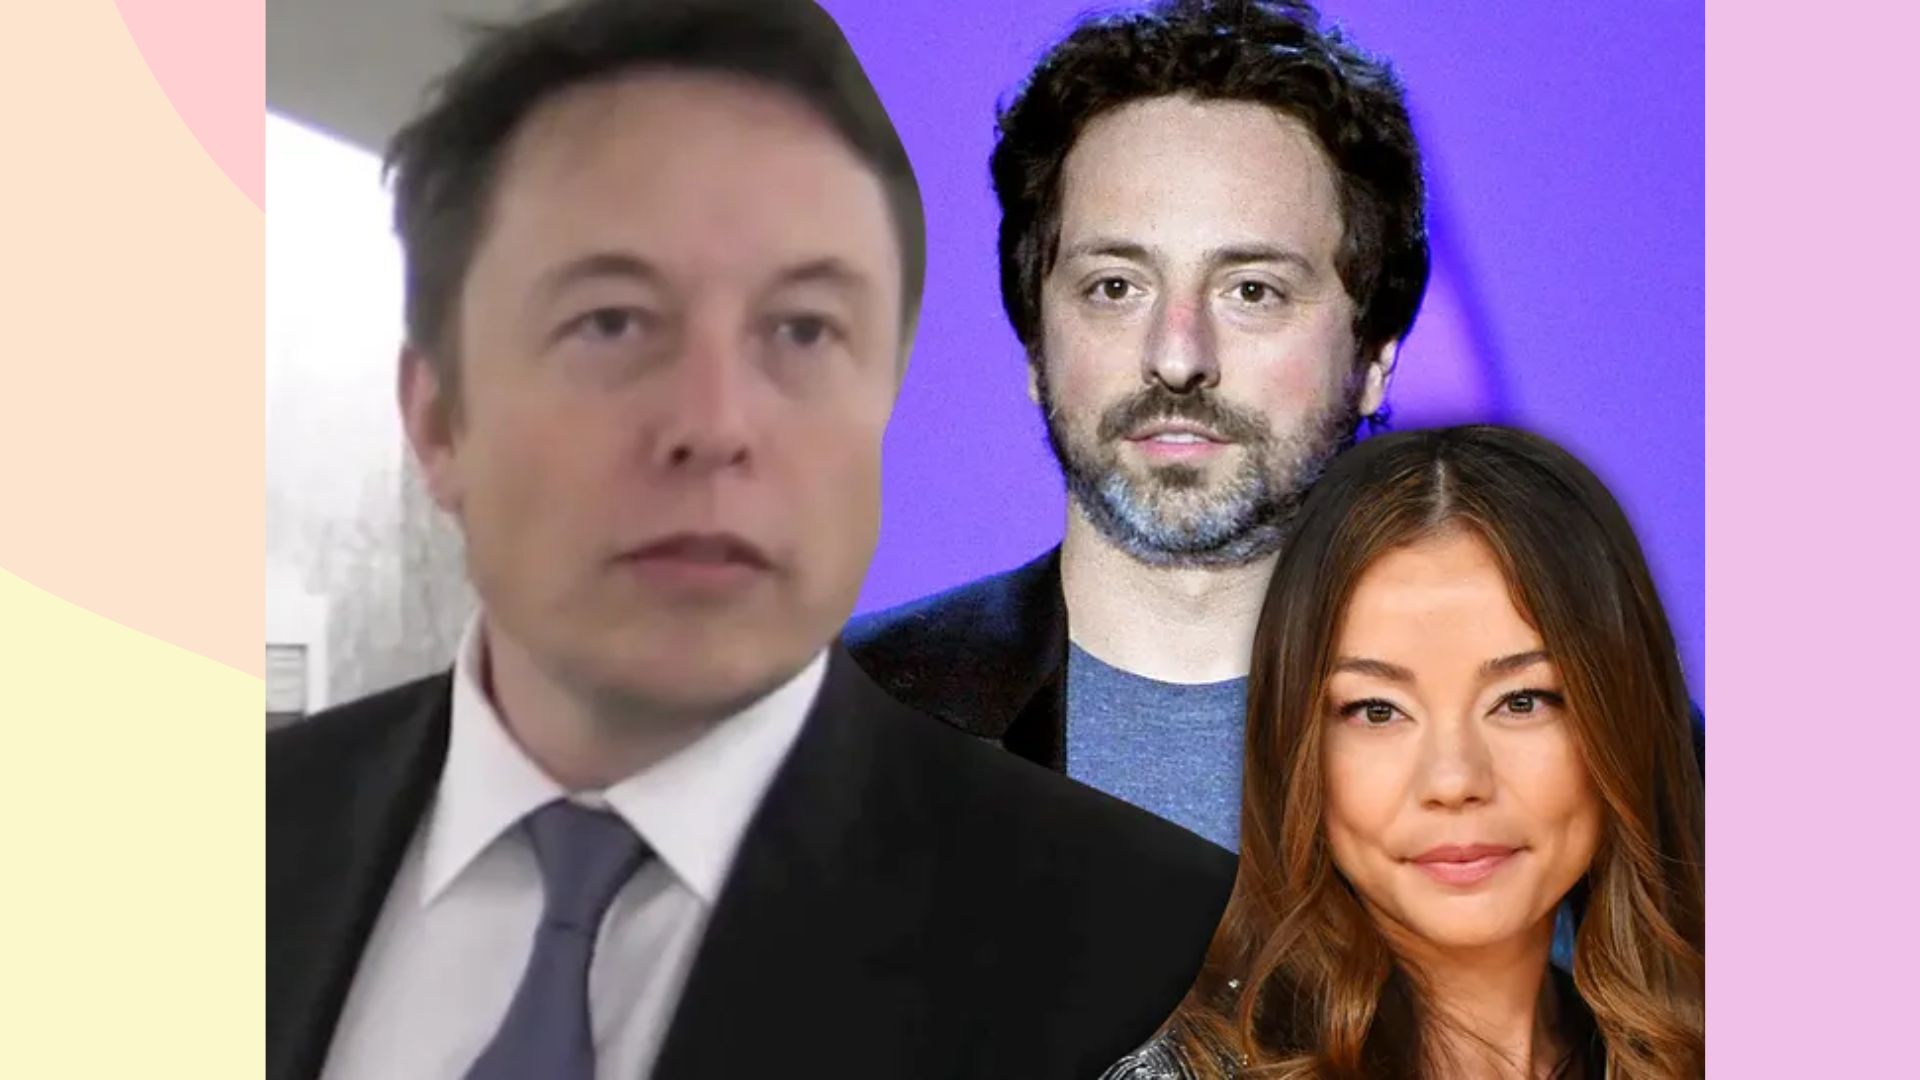 Elon Musk ने तो एक अरसे से Sex भी नहीं किया, जानिए … दुनिया के सबसे अमीर शख्स को ये क्यों बताना पड़ रहा